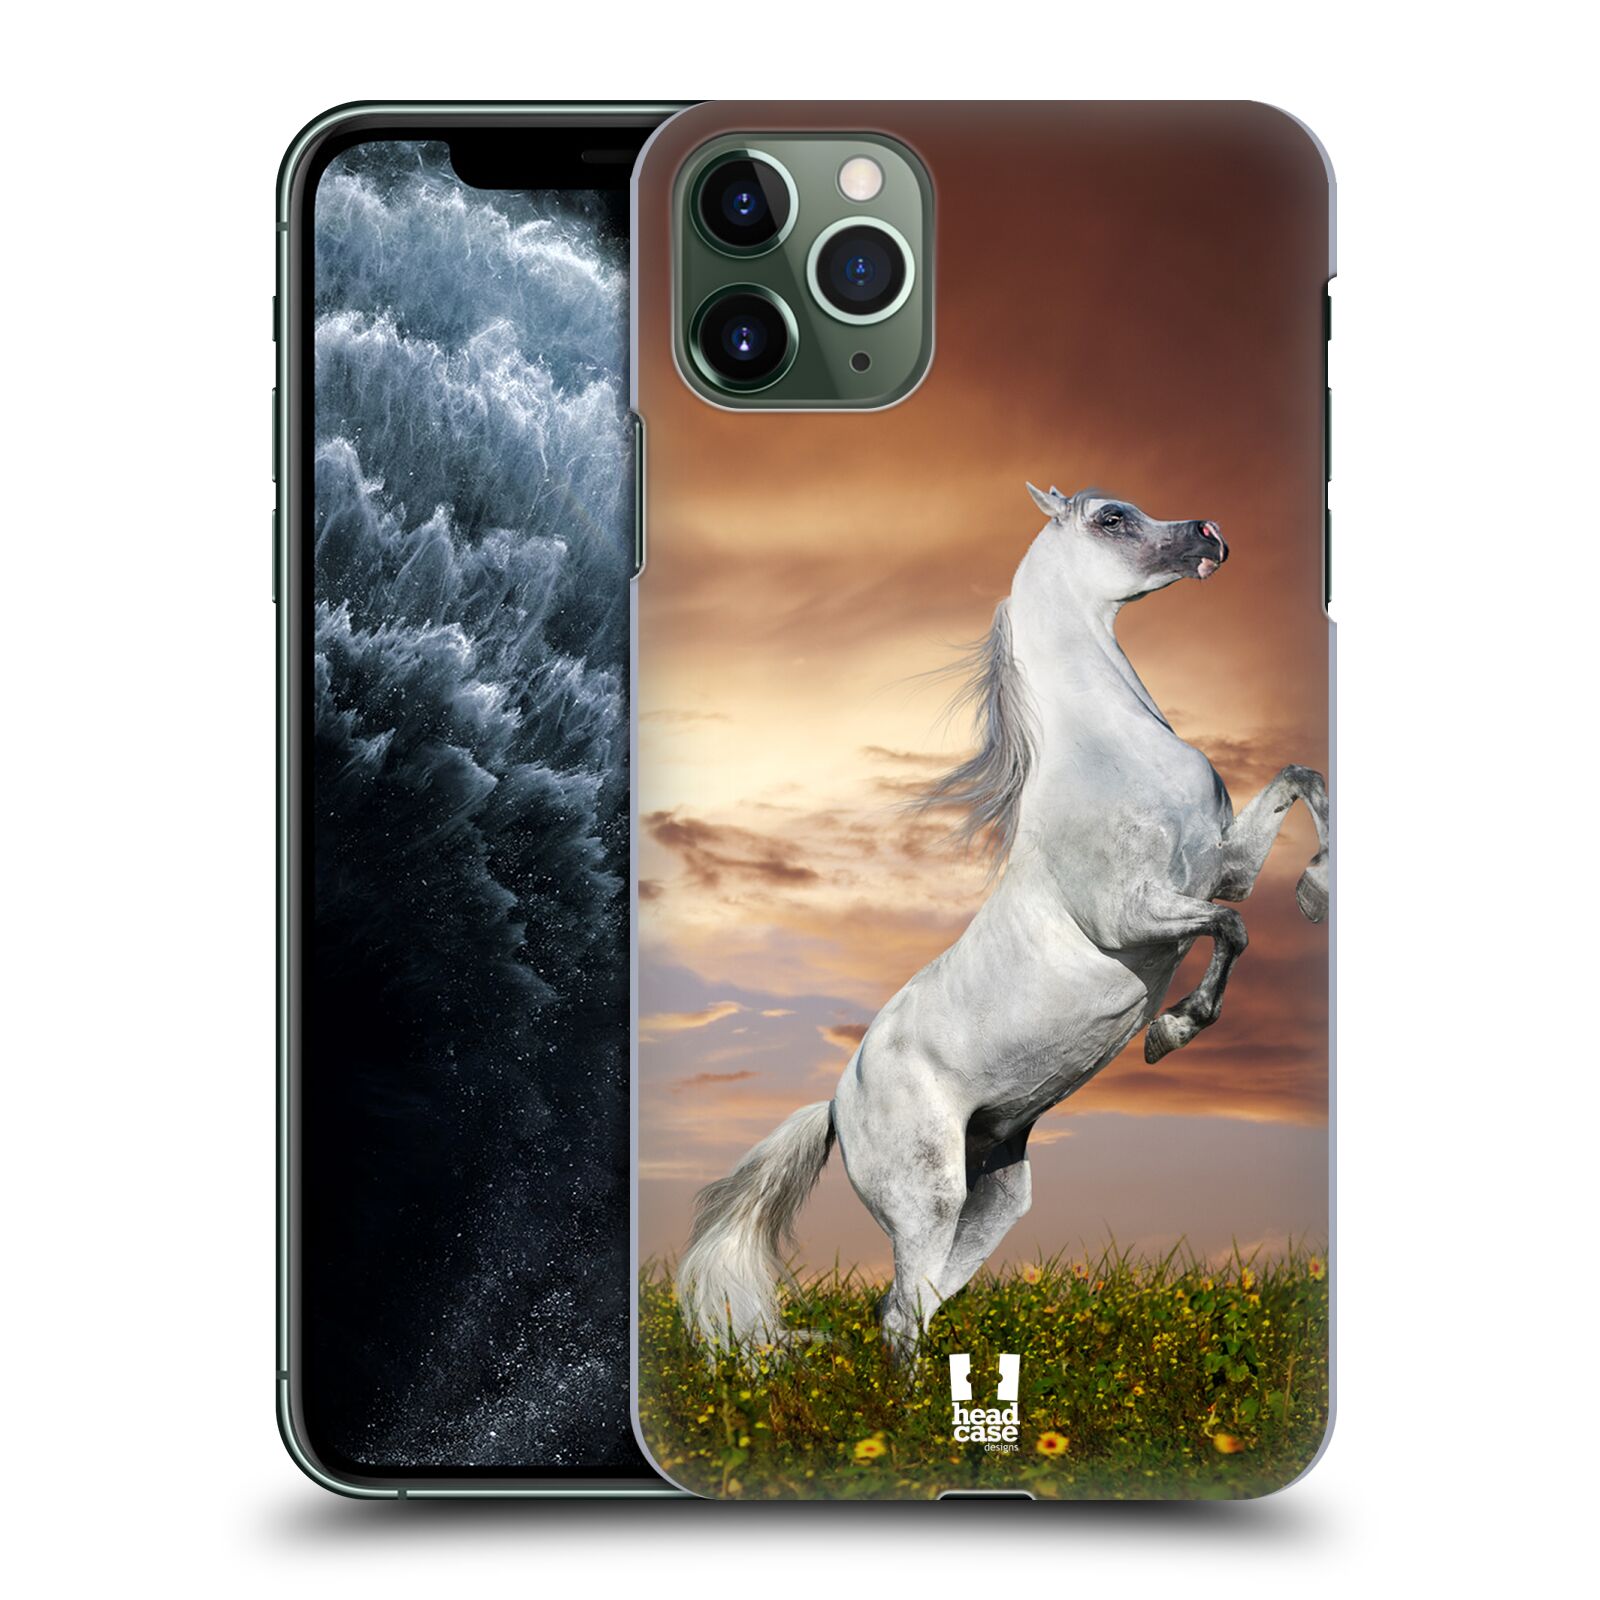 Zadní obal pro mobil Apple Iphone 11 PRO MAX - HEAD CASE - Svět zvířat divoký kůň